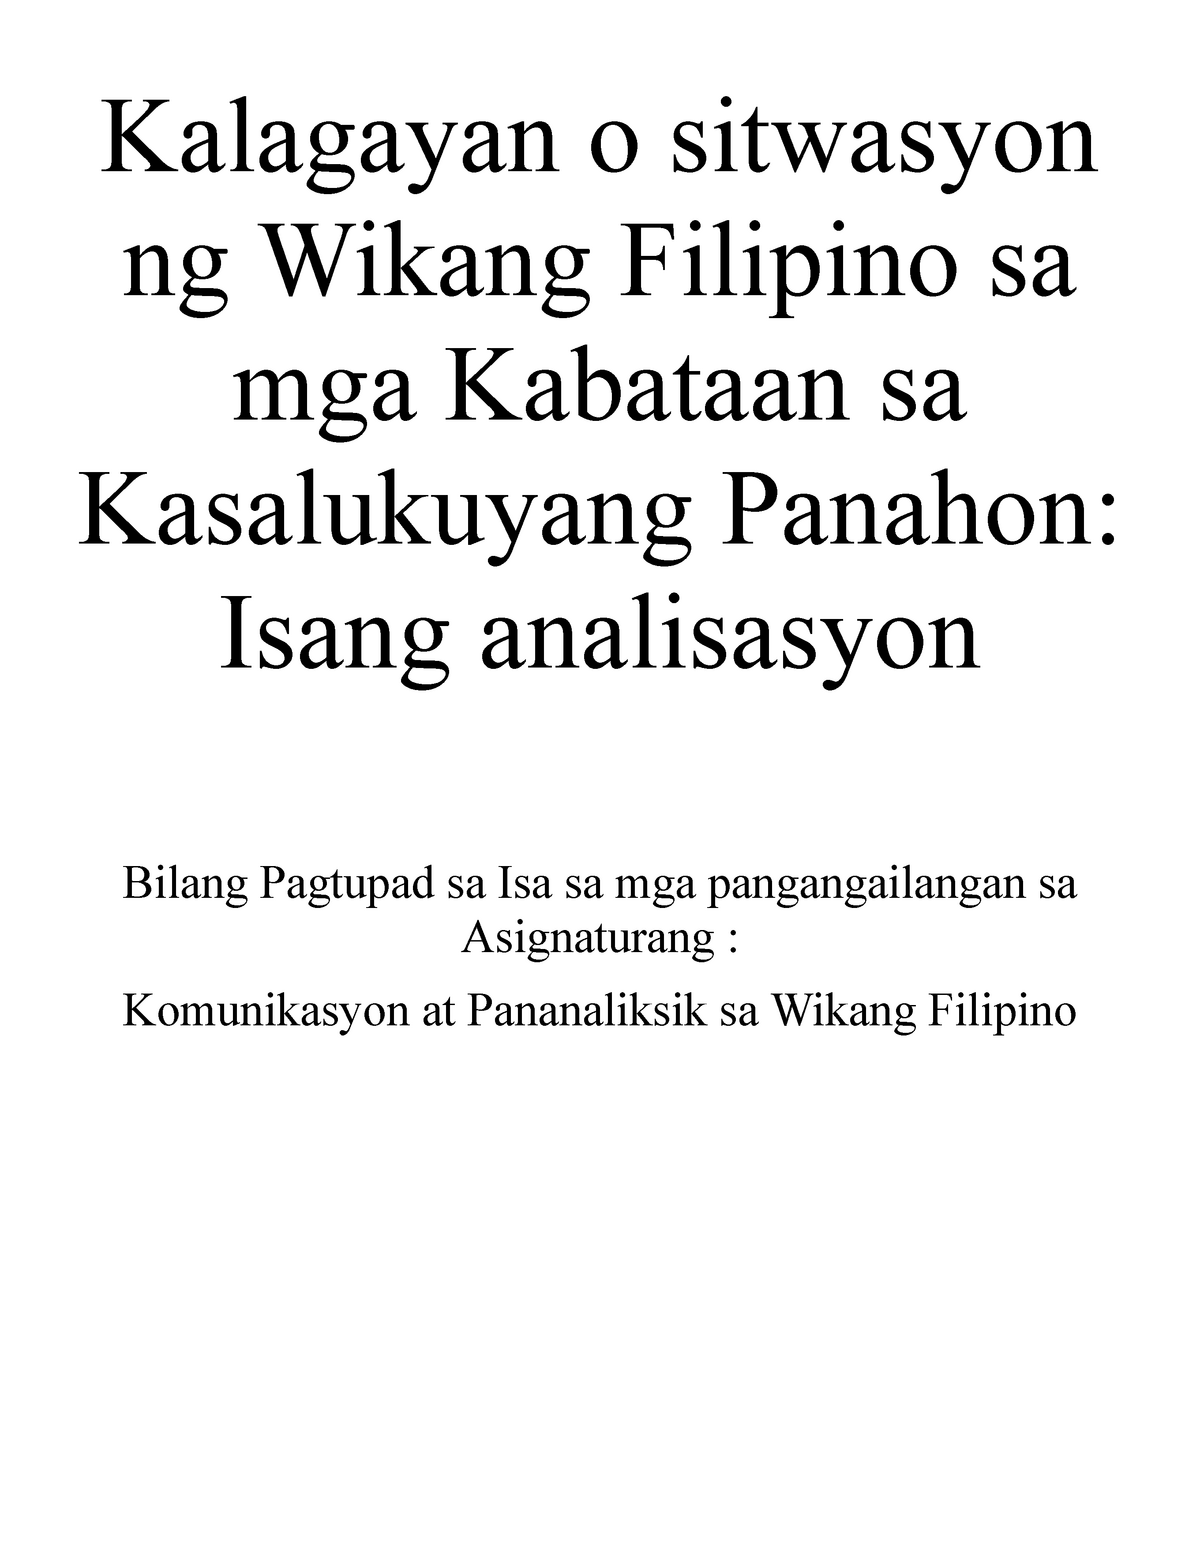 30+ Kalagayan ng ating wika bago ang pananakop brainly information